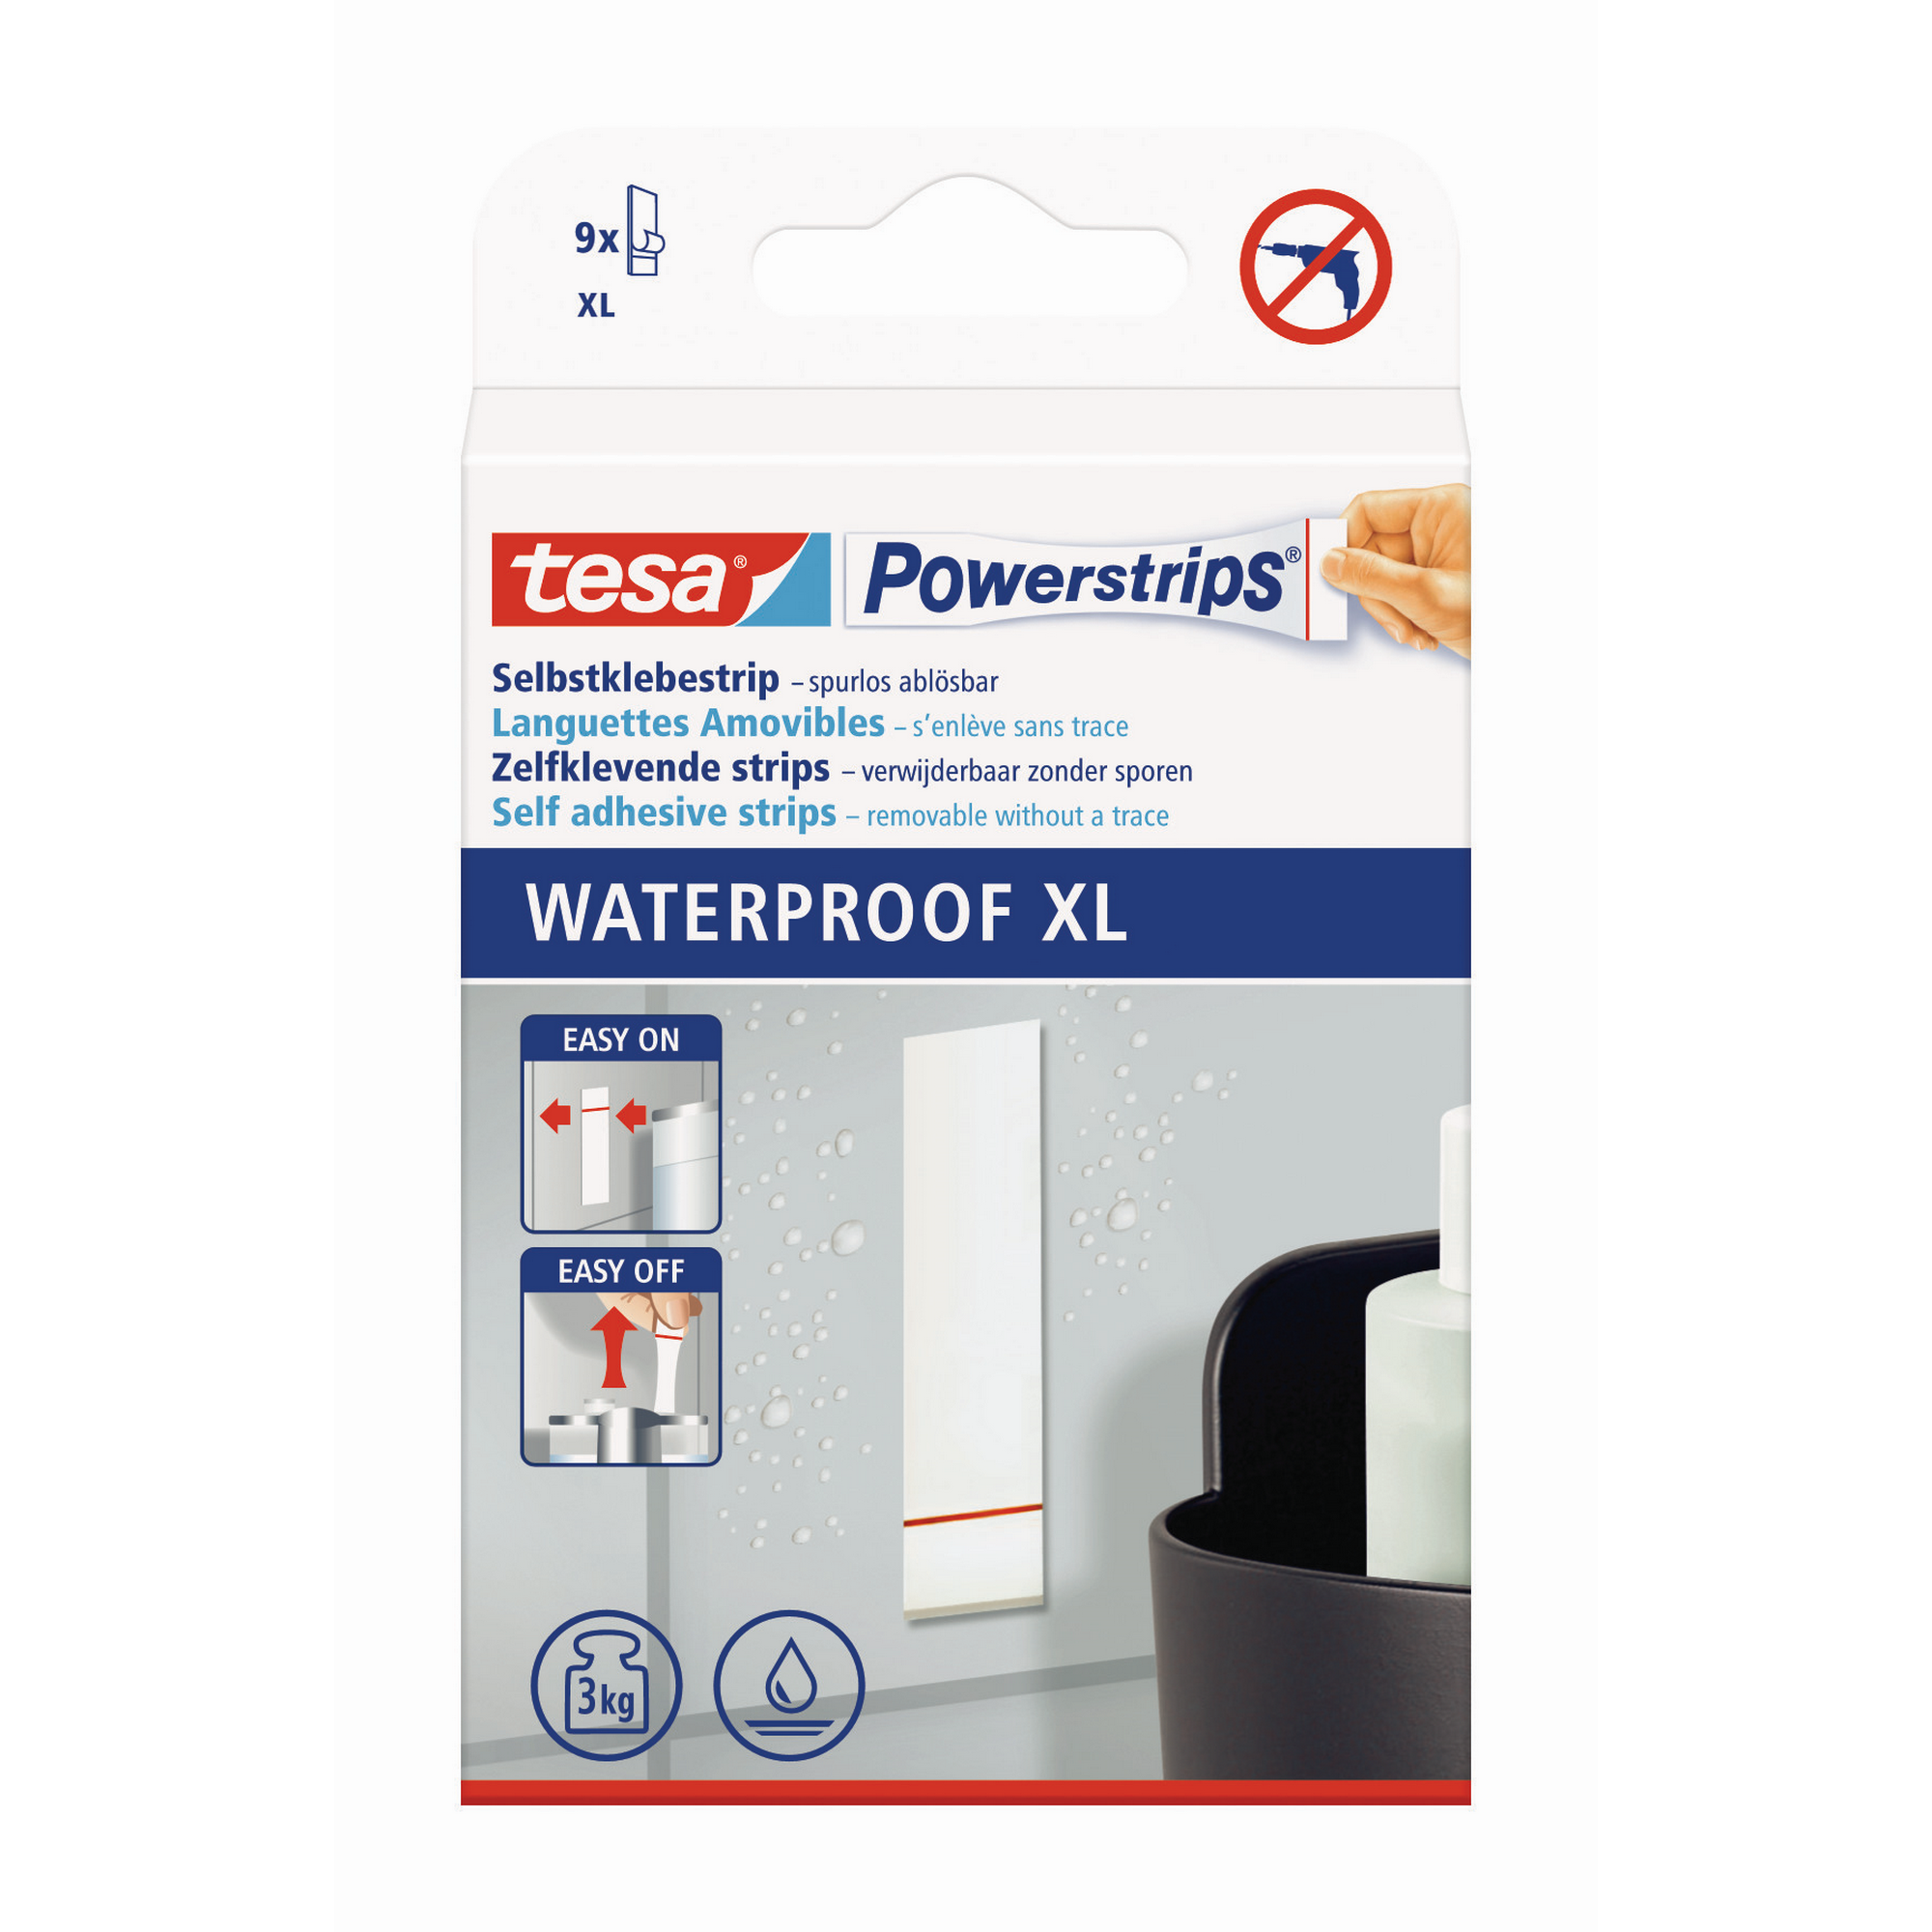 Powerstrips 'Waterproof XL' selbstklebende Befestigungslösung für Bäder 9 Stück + product picture